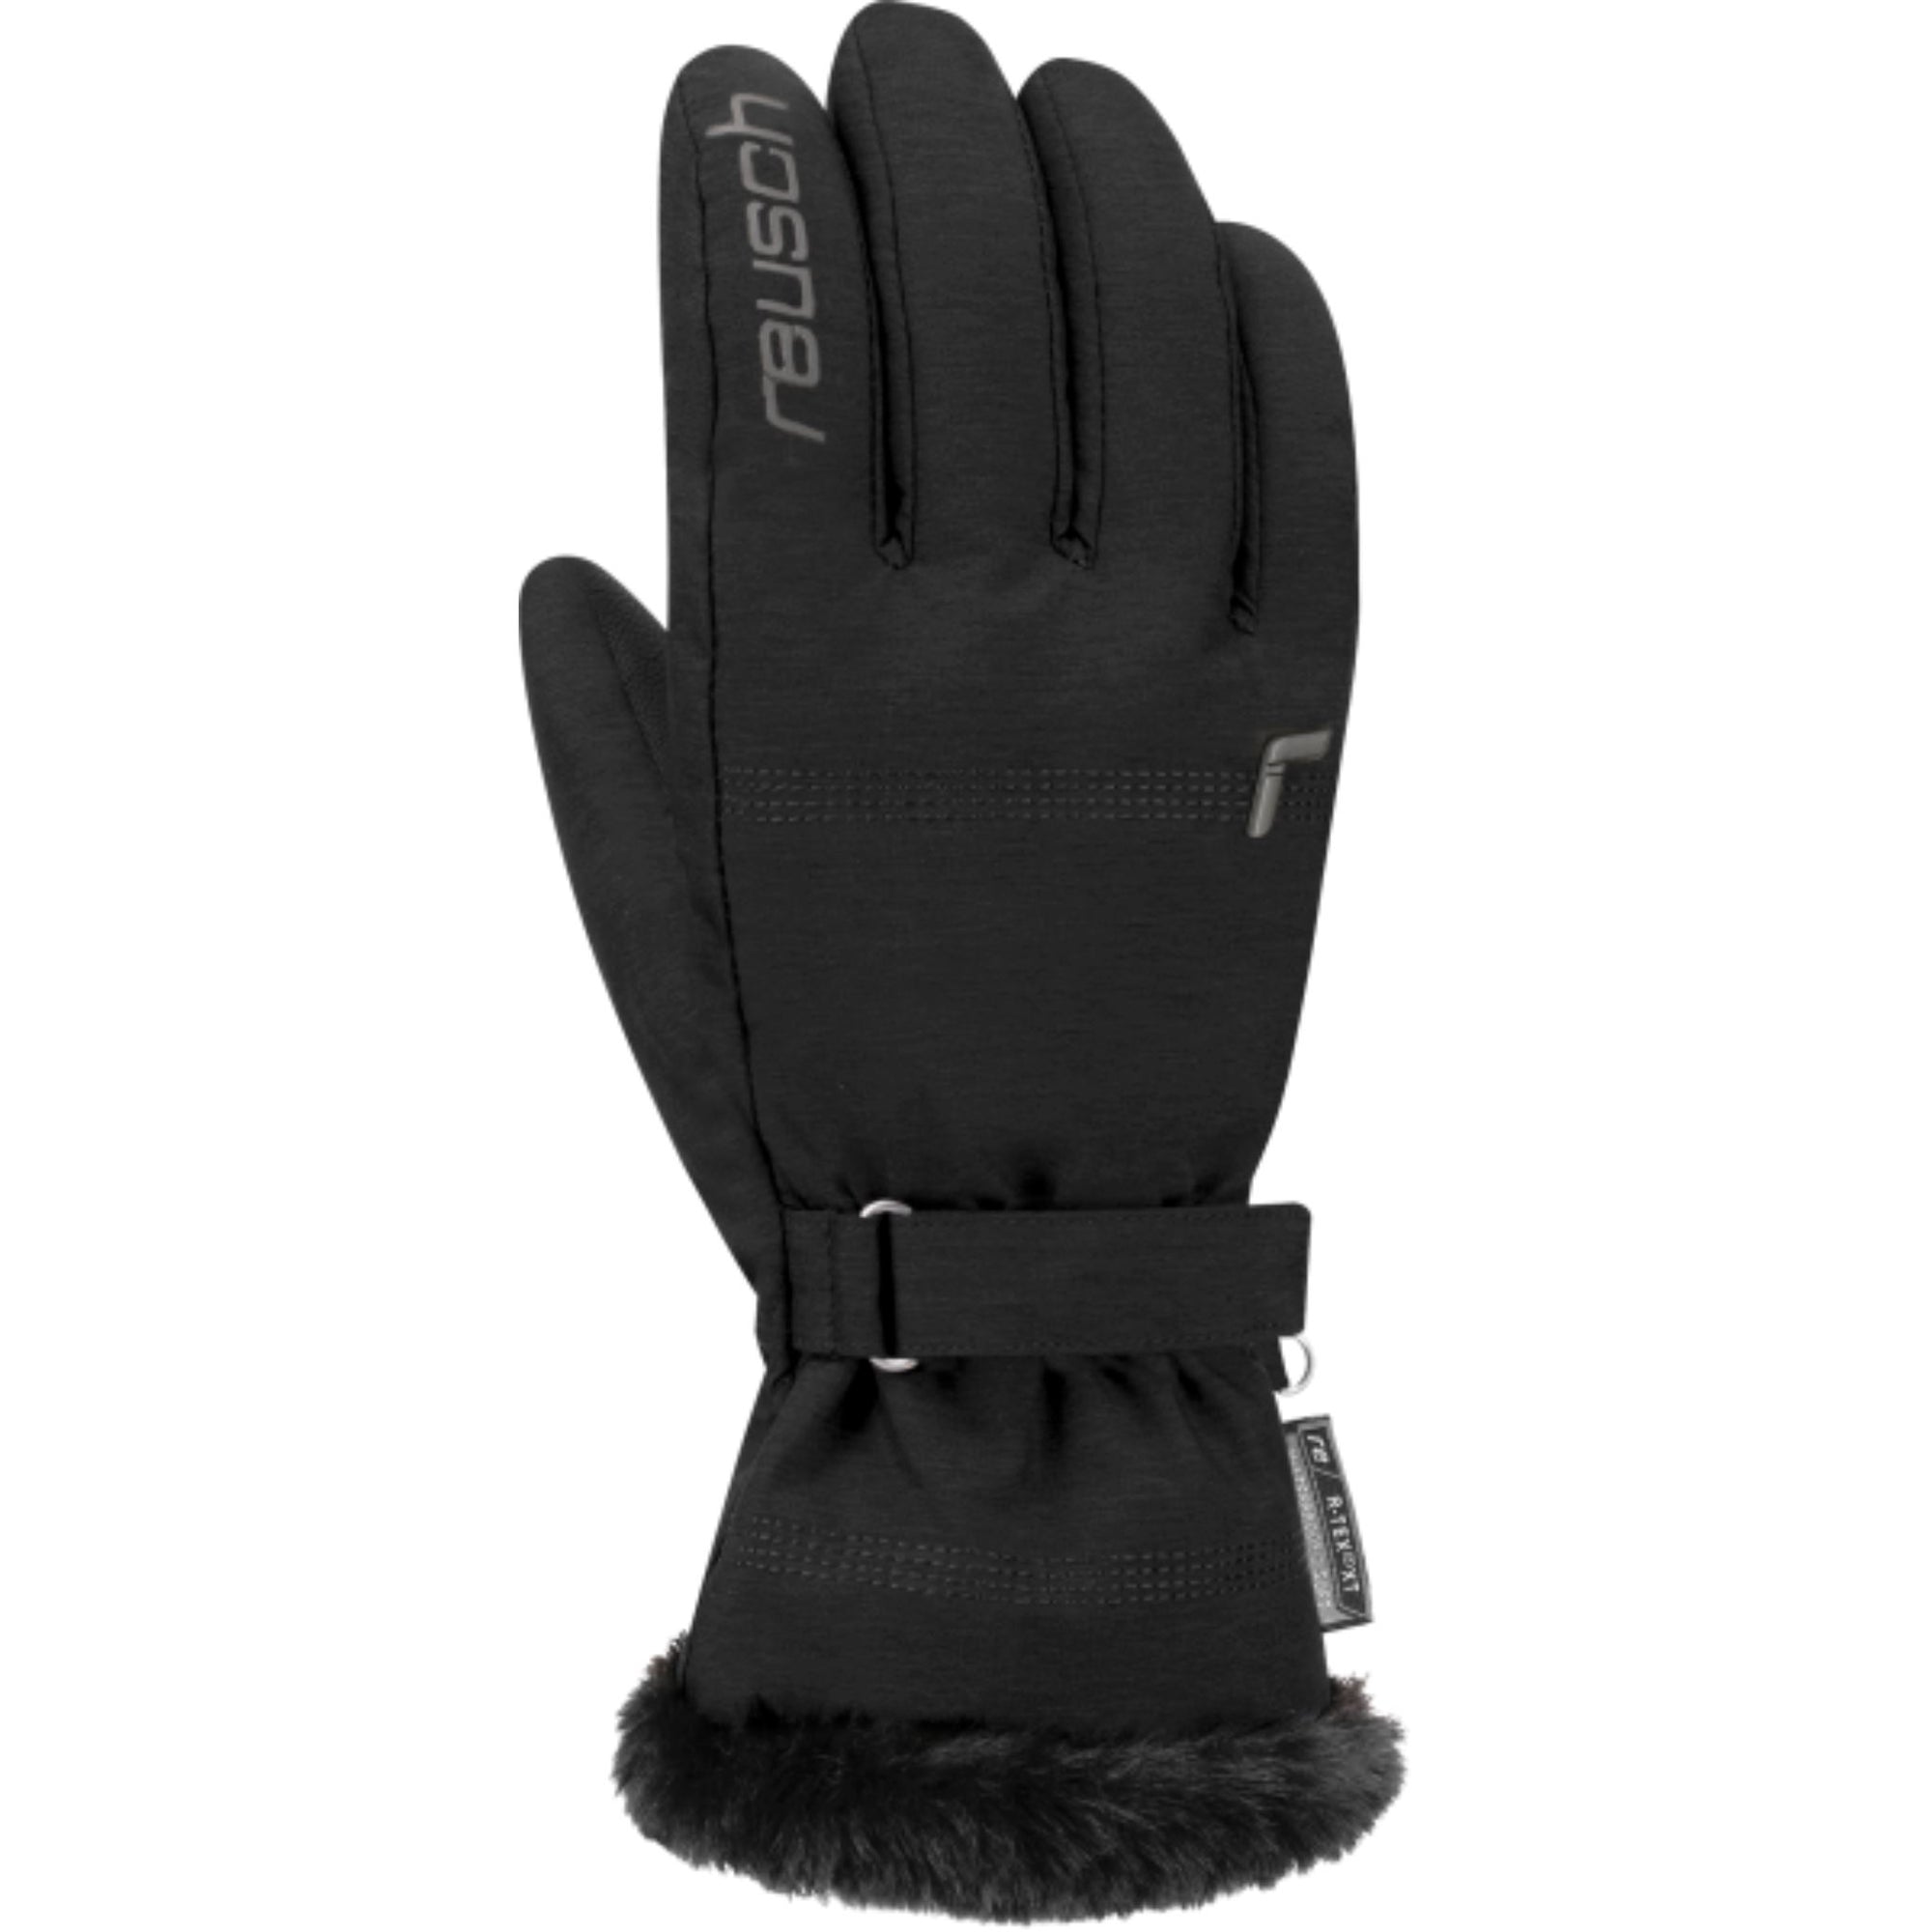 Womens Reusch Luna R-TEX XT - Black Gloves Reusch XS / 6.5 